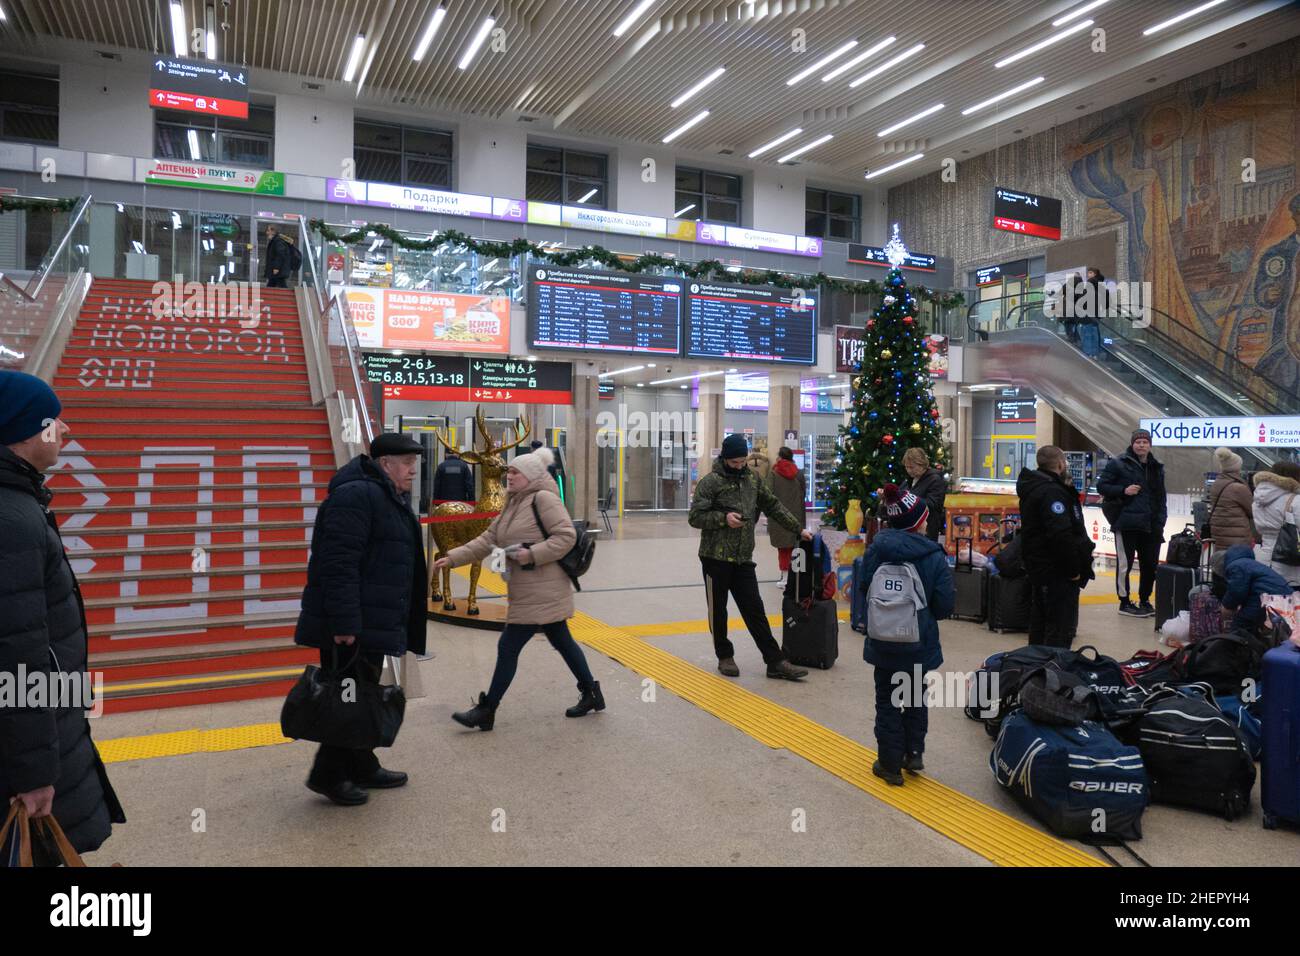 Railway station in Nizhny Novgorod inside 22 Stock Photo